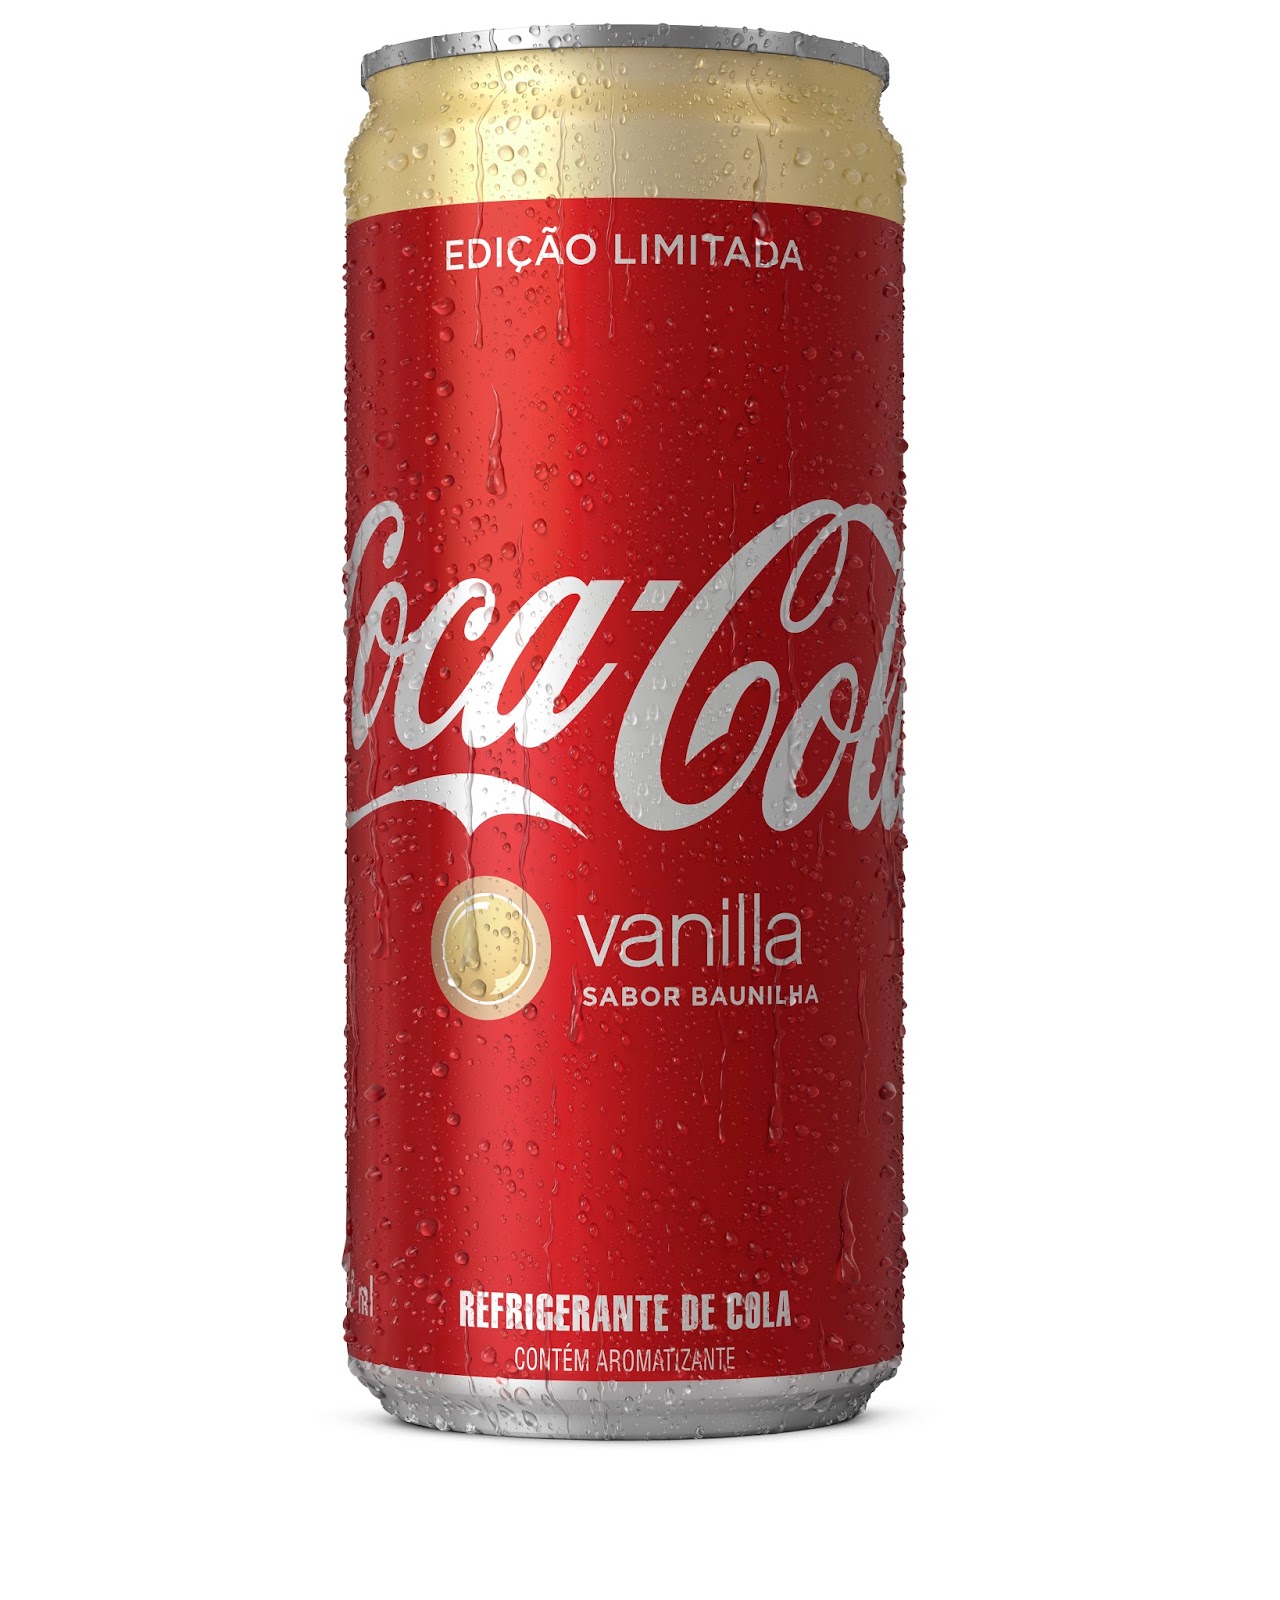 Ioiô comemorativo de 125 anos da Coca-Cola - Associação Brasileira